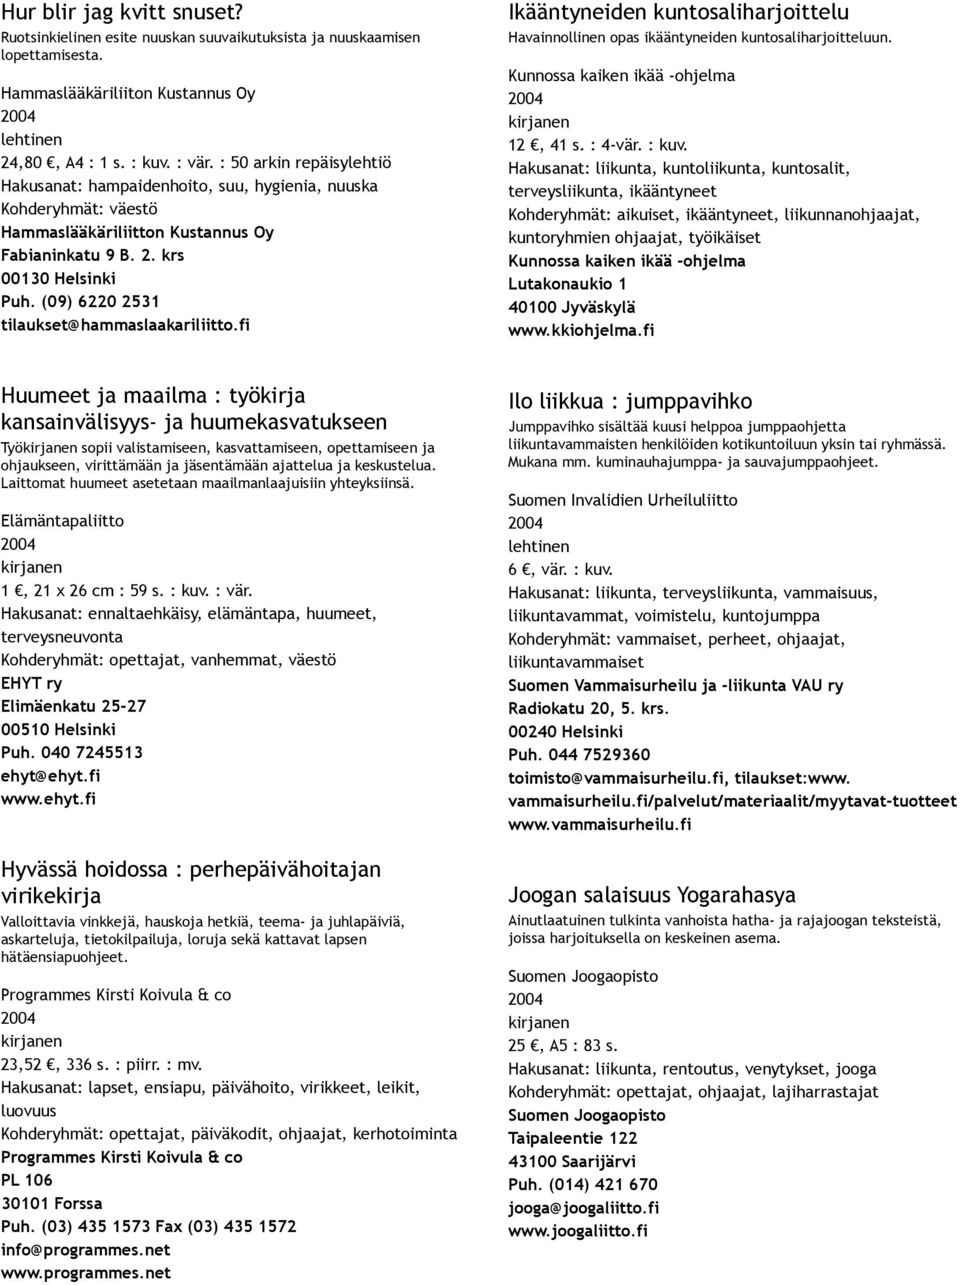 (09) 6220 2531 tilaukset@hammaslaakariliitto.fi Ikääntyneiden kuntosaliharjoittelu Havainnollinen opas ikääntyneiden kuntosaliharjoitteluun. Kunnossa kaiken ikää ohjelma 12, 41 s. : 4 vär. : kuv.